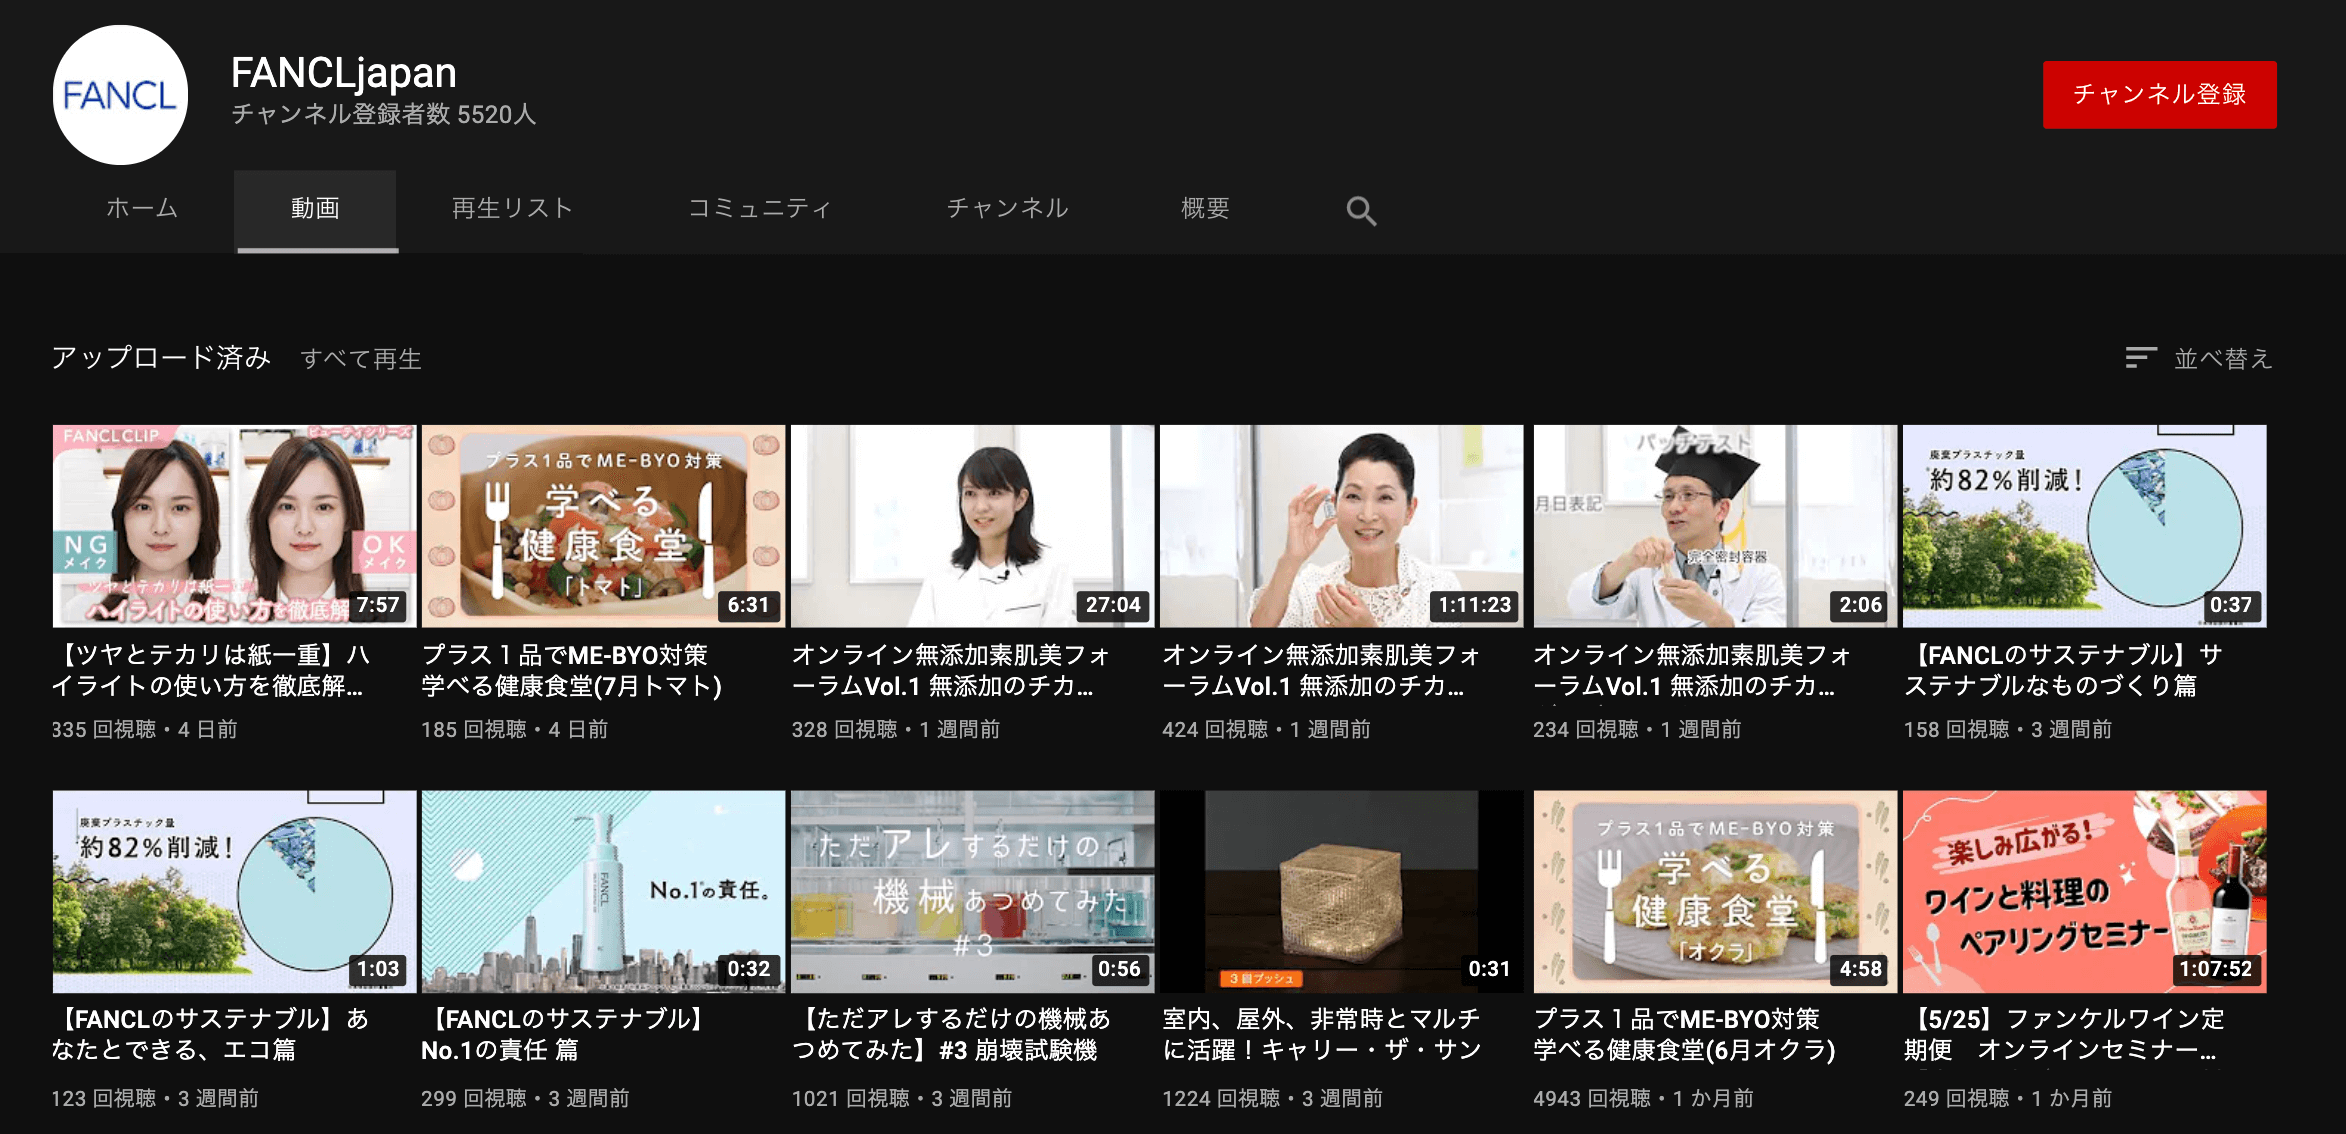 FANCL JAPAN-Youtube channnel